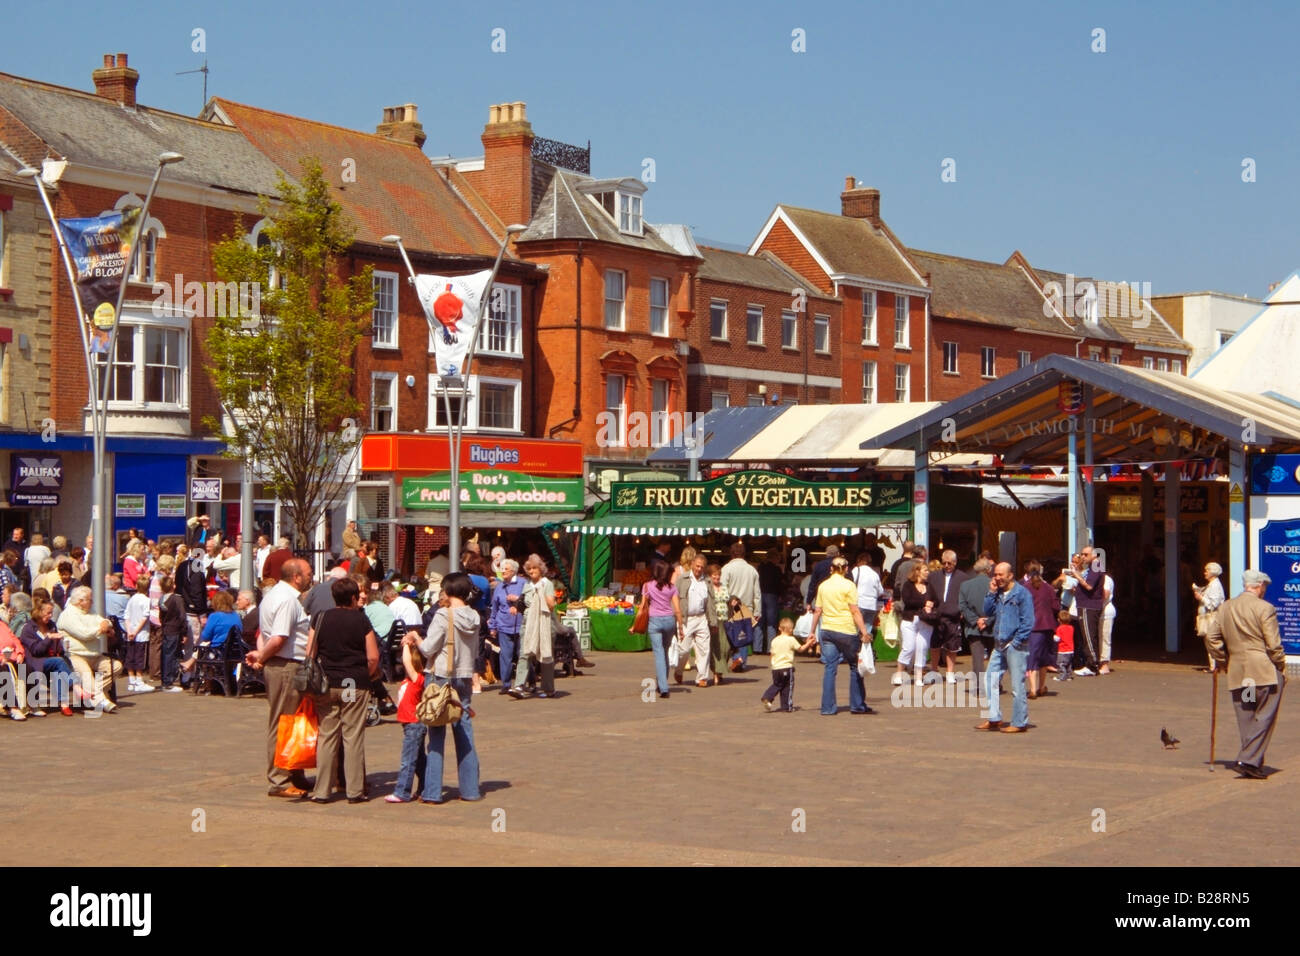 Typische geschäftige Town Center- und Market Square Szene, Great Yarmouth Norfolk, England, Großbritannien Stockfoto